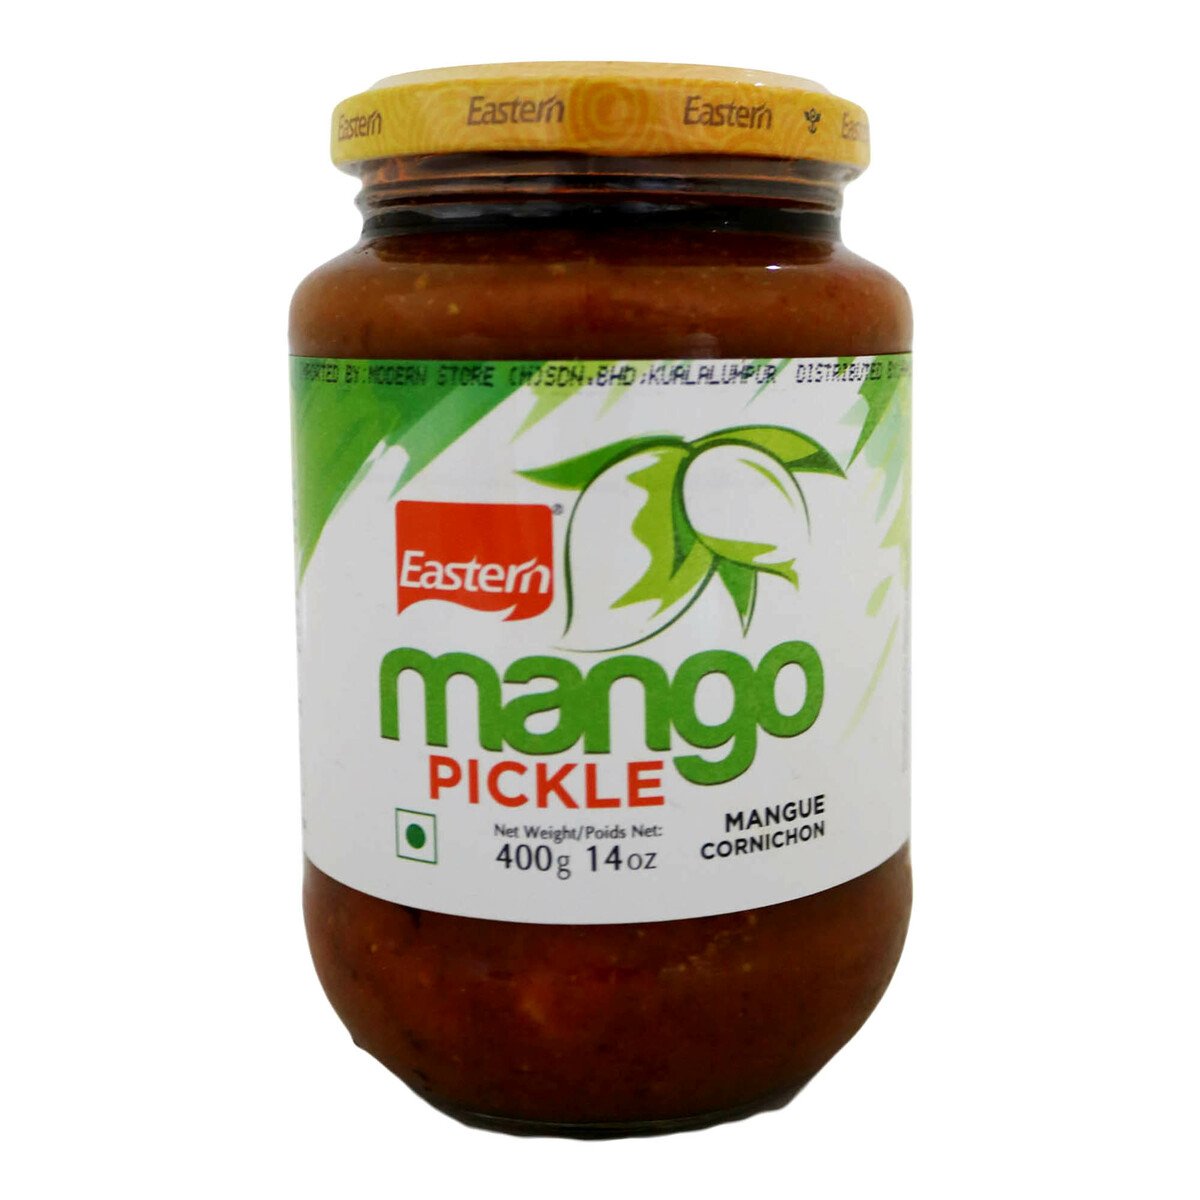 Eastern Mango Pickle 400g